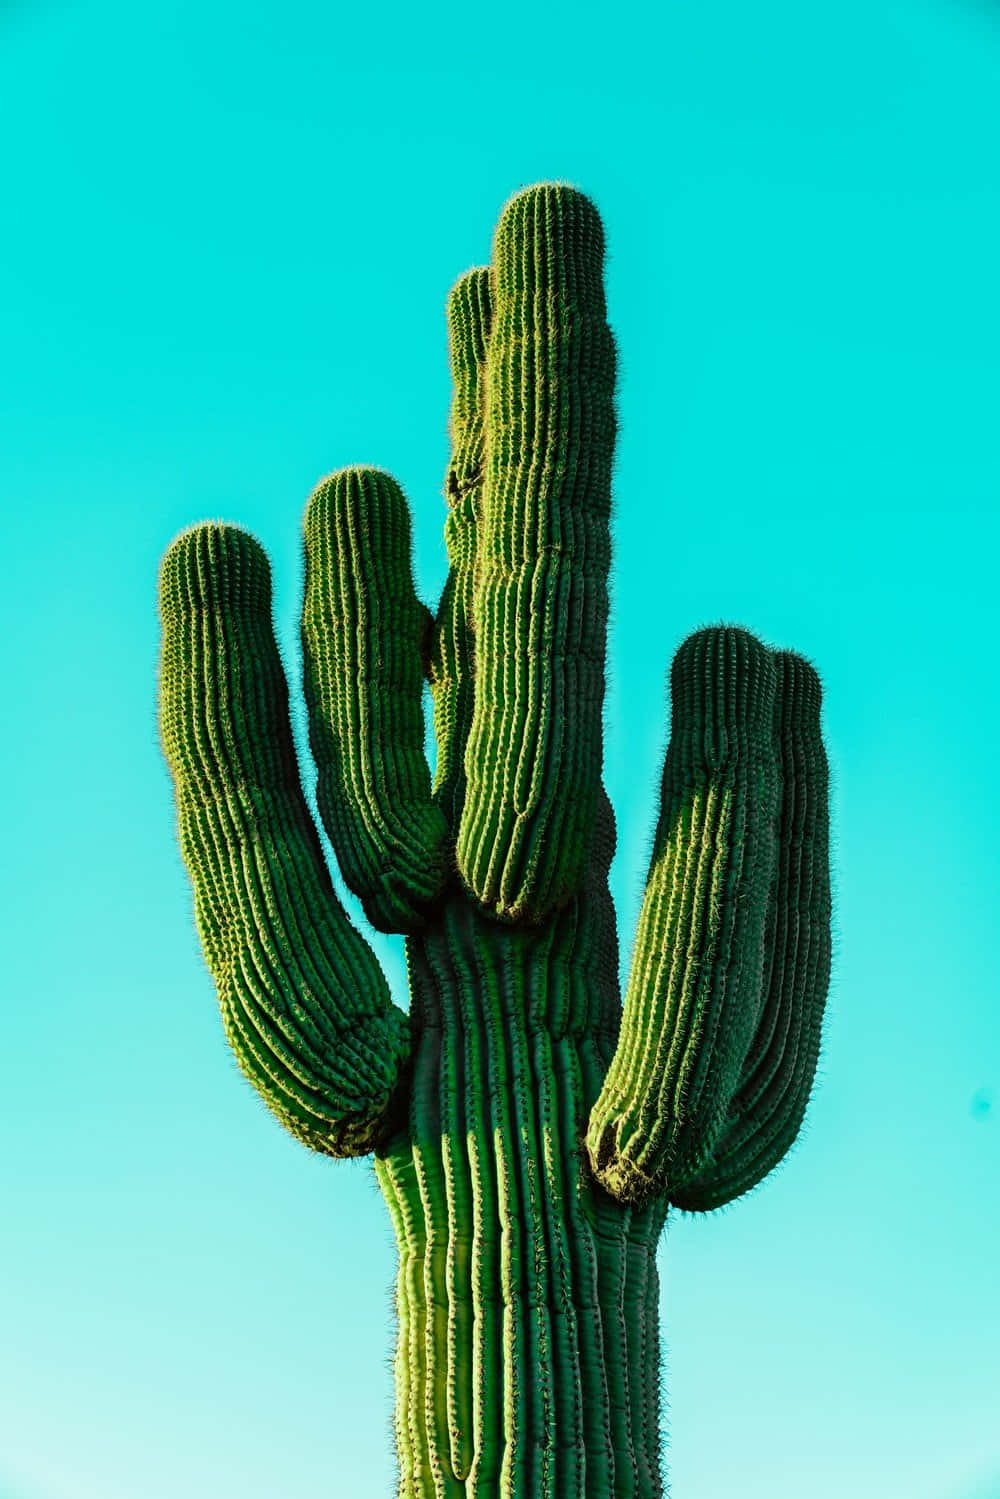 Alrevés Y Por Todas Partes, Este Cactus Prosperará En Cualquier Entorno.